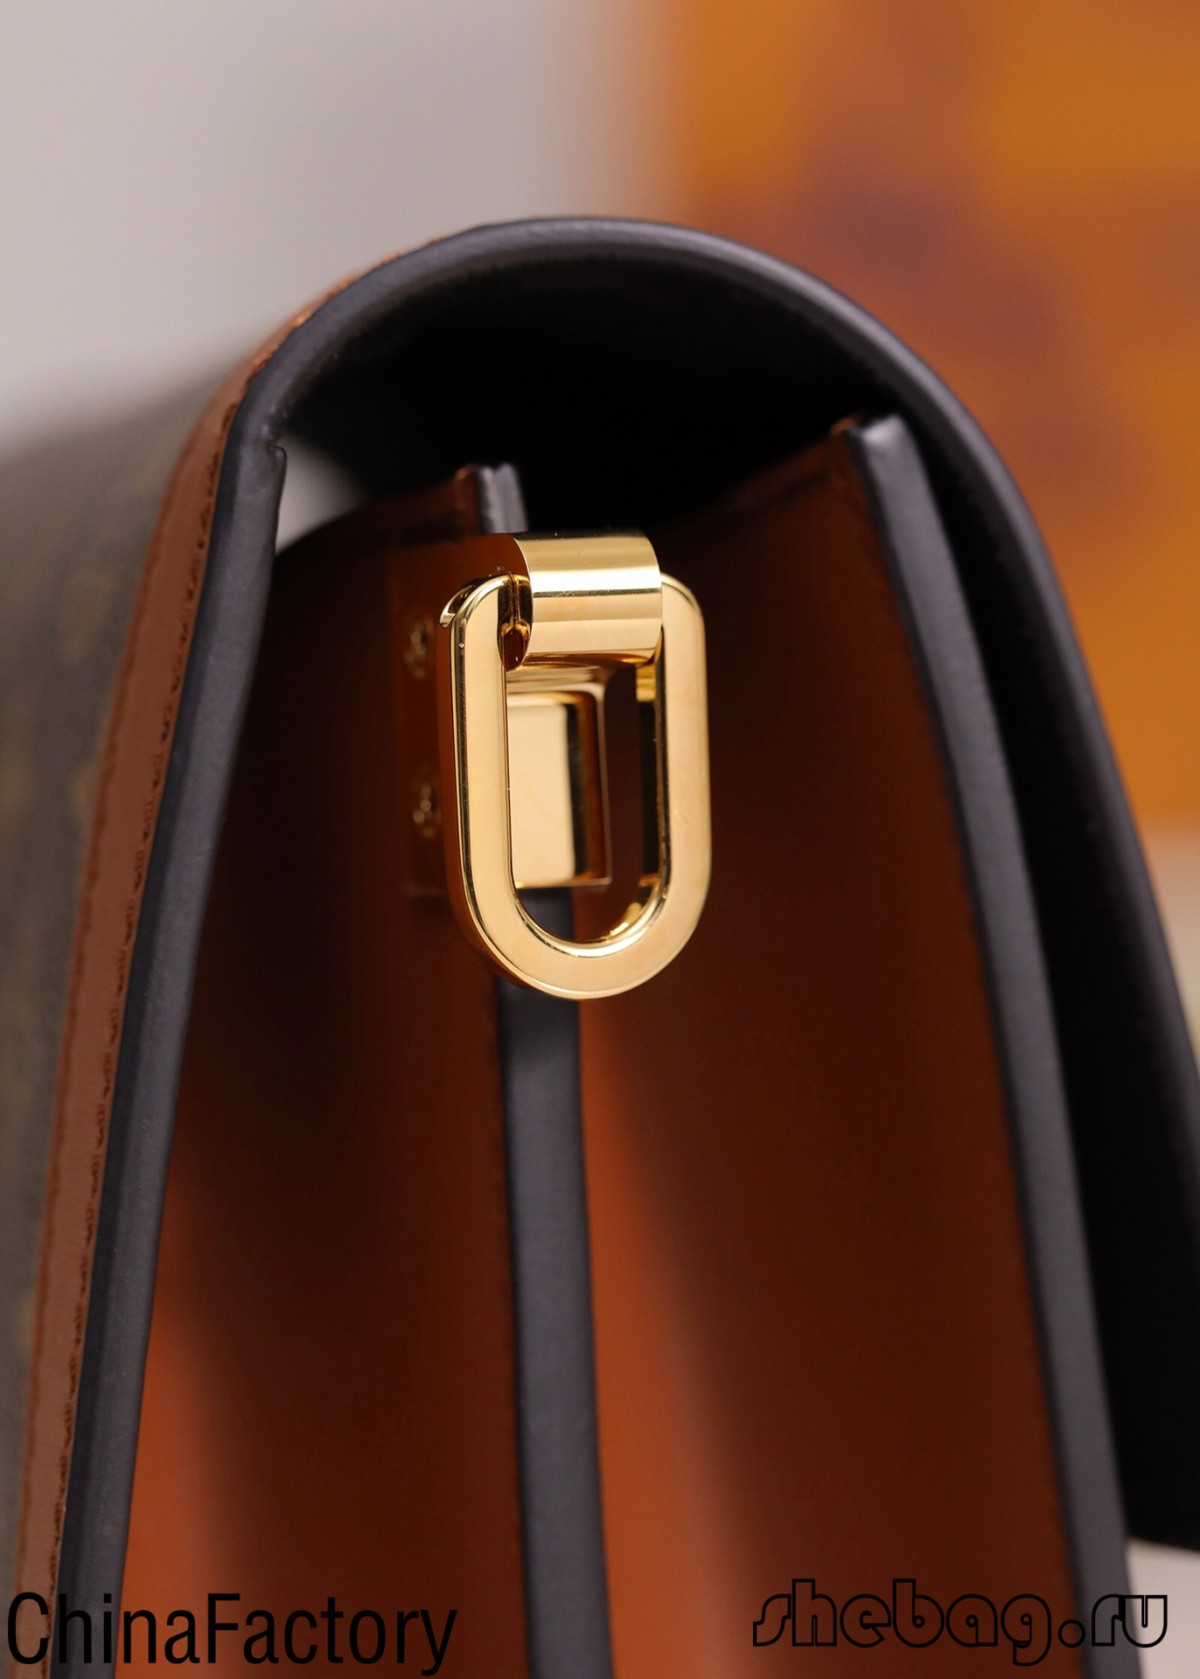 Я хачу купіць копію дызайнерскіх сумак, рэкамендацыя бэстсэлера DHGate? (Абнаўленне 2022 г.) - Інтэрнэт-крама падробленай сумкі Louis Vuitton лепшай якасці, копія дызайнерскай сумкі ru